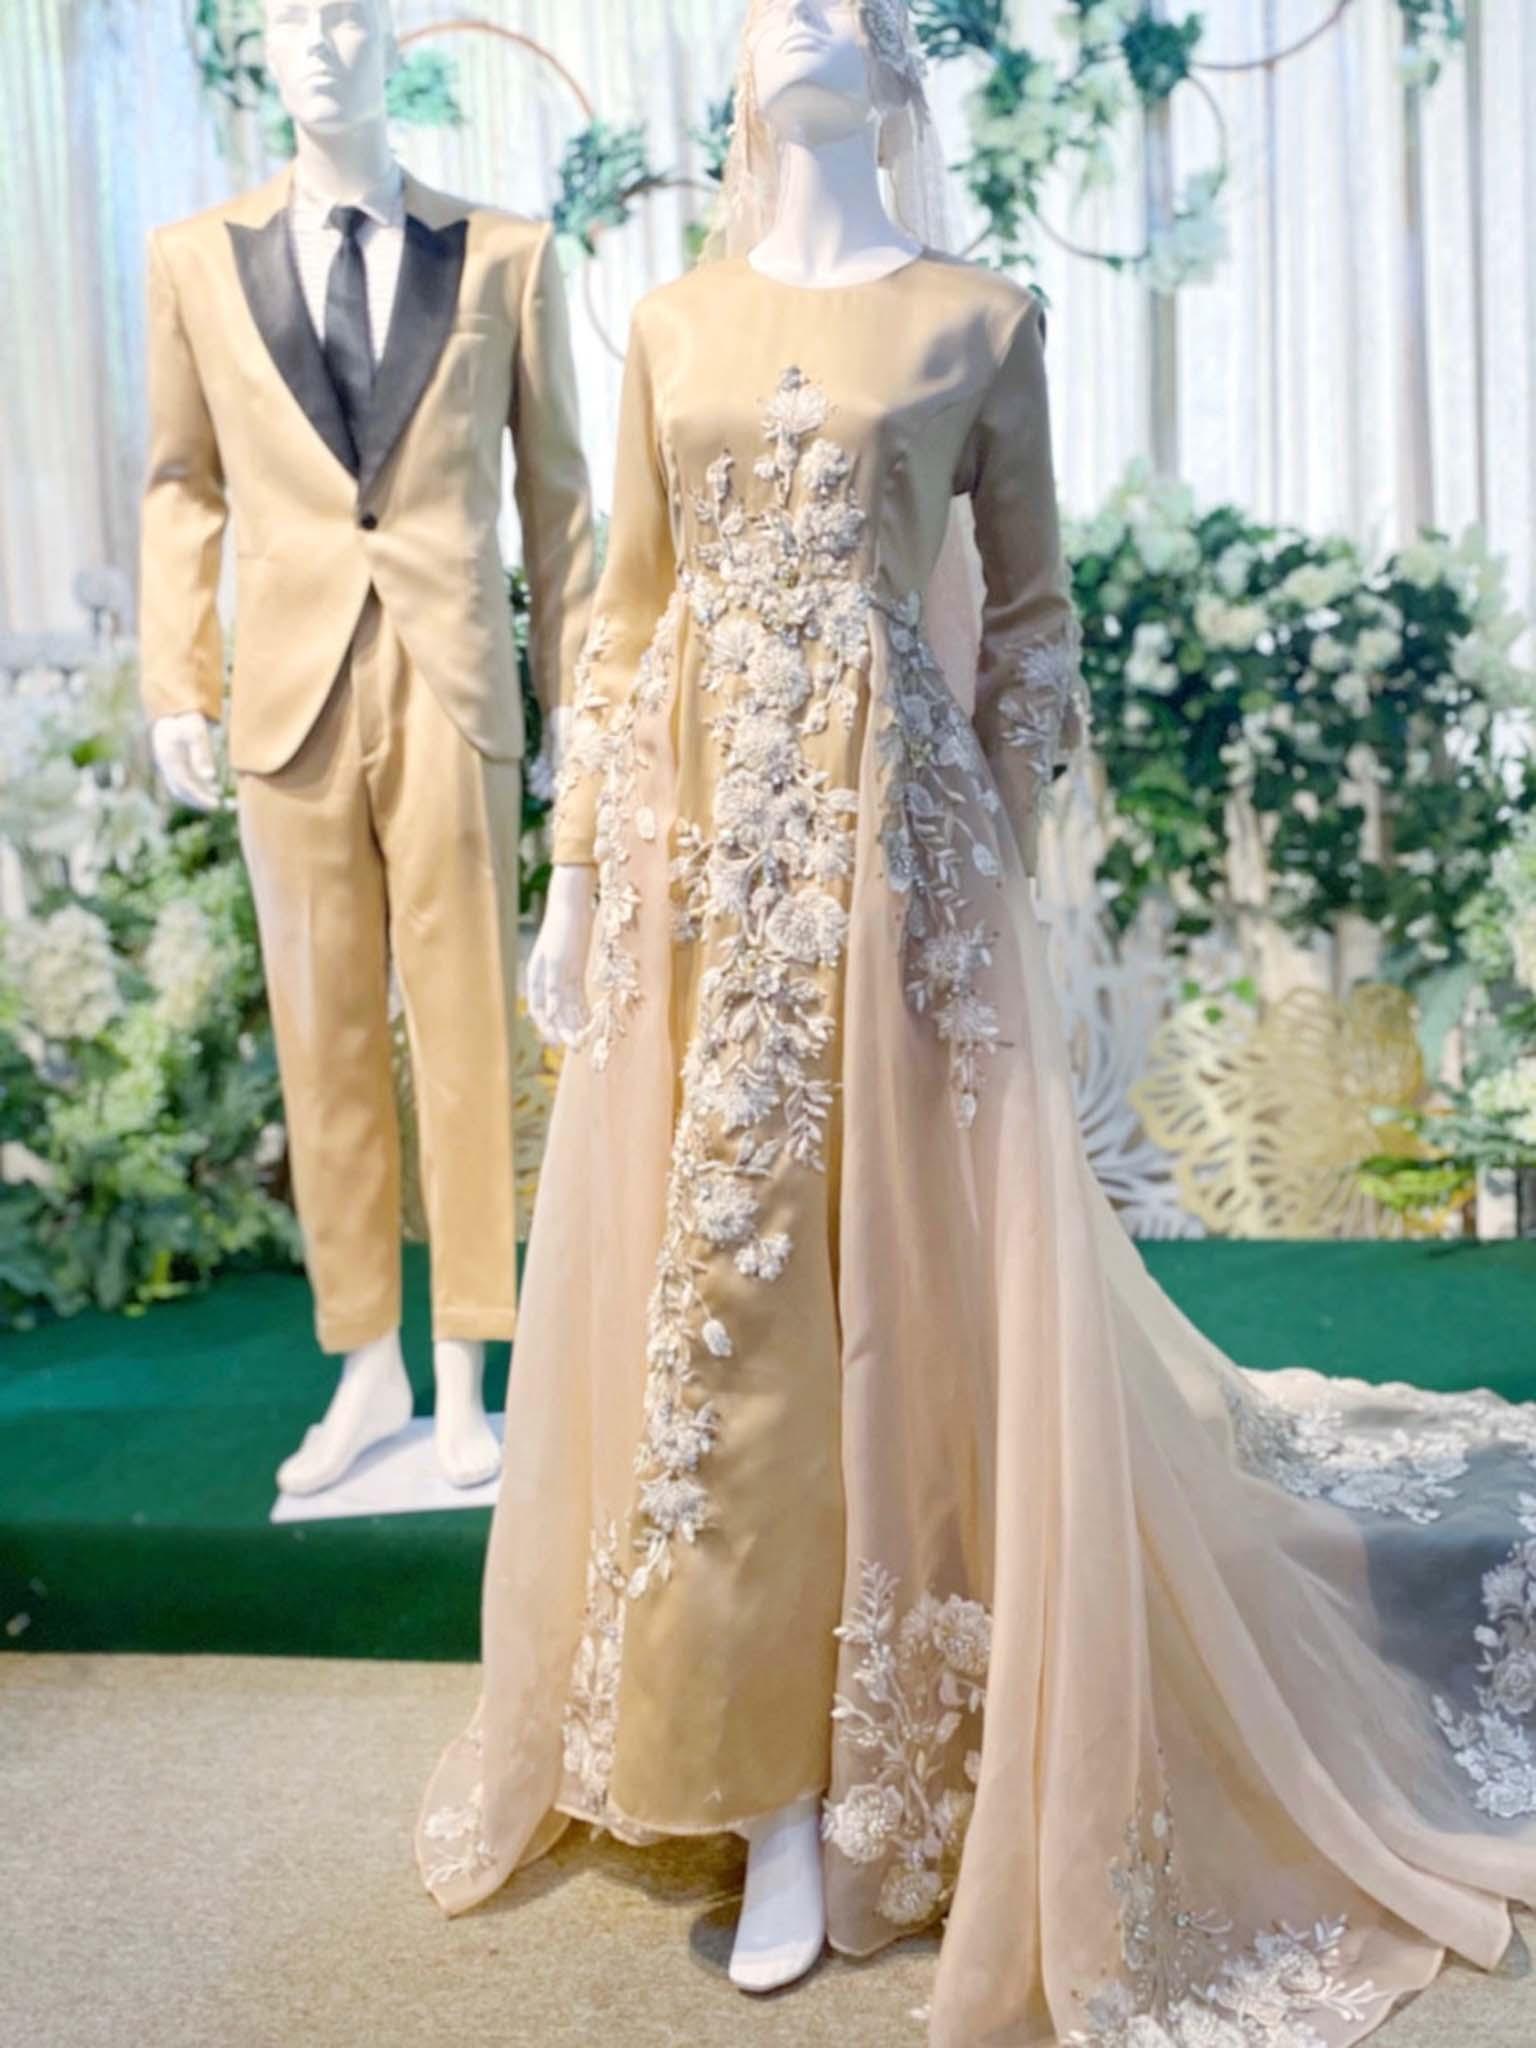 Sewa Baju Pengantin Muslimah Dress with Trail, Duchess Dusty Champagne by PP Signature Bridal Boutique-Malay Wedding Dress